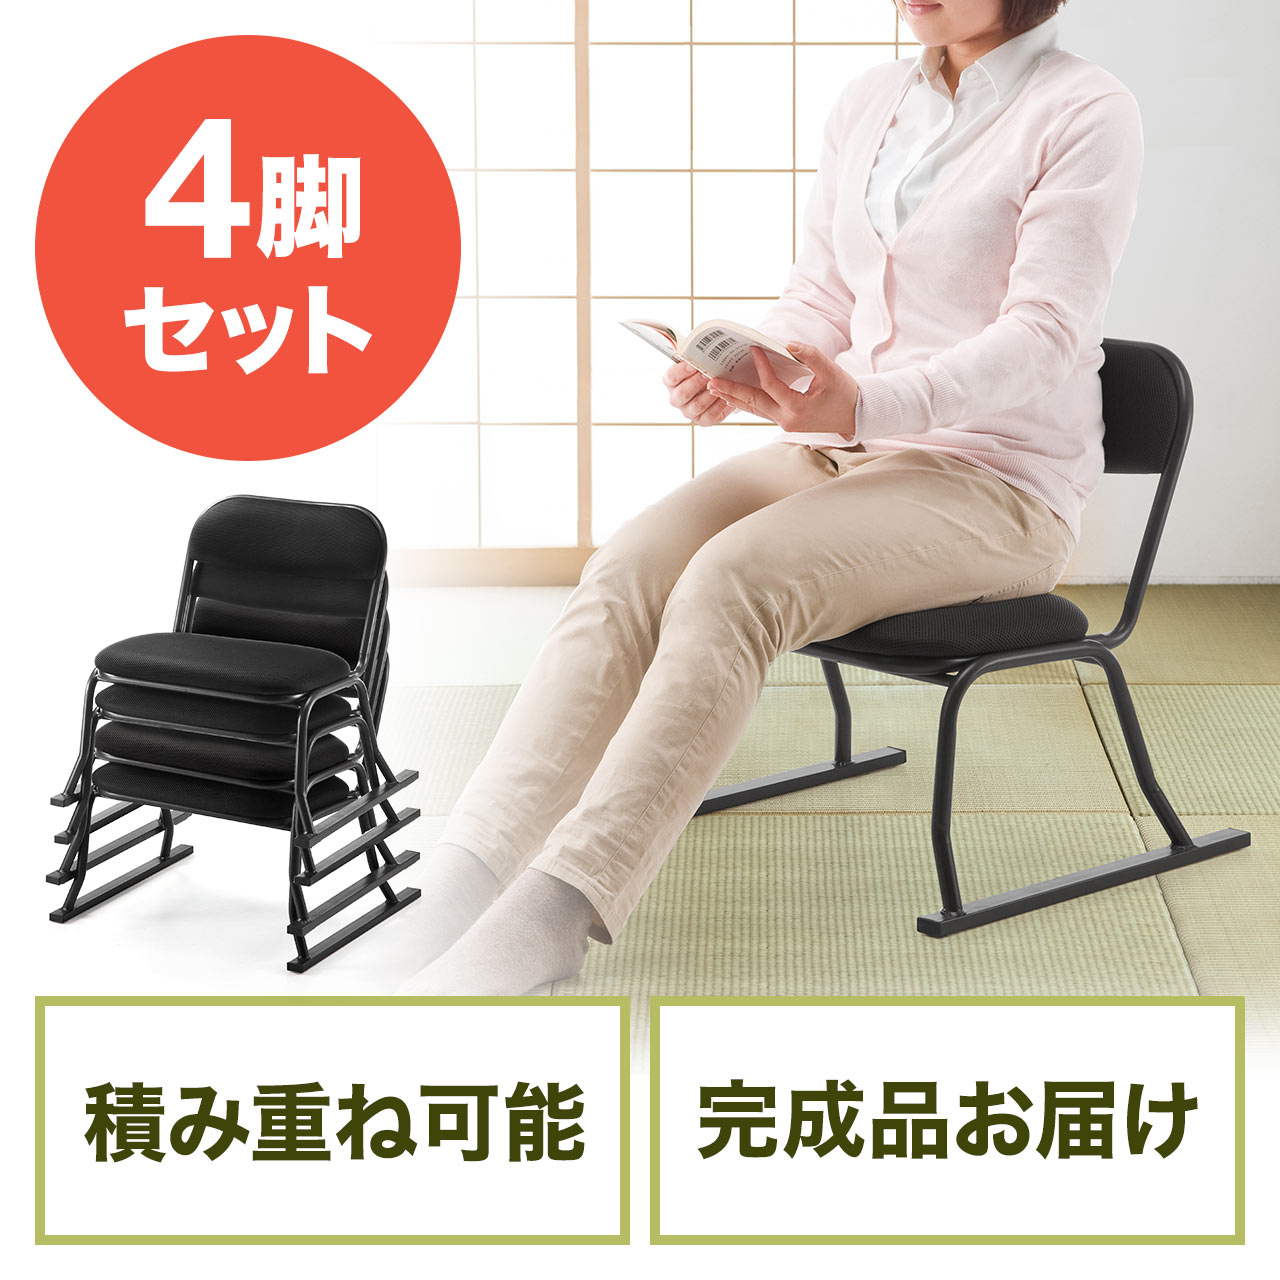 座敷椅子 高座椅子 和室 腰痛対策 スタッキング可能 4脚セット ブラック 公民館 旅館 150-SNCH004BK